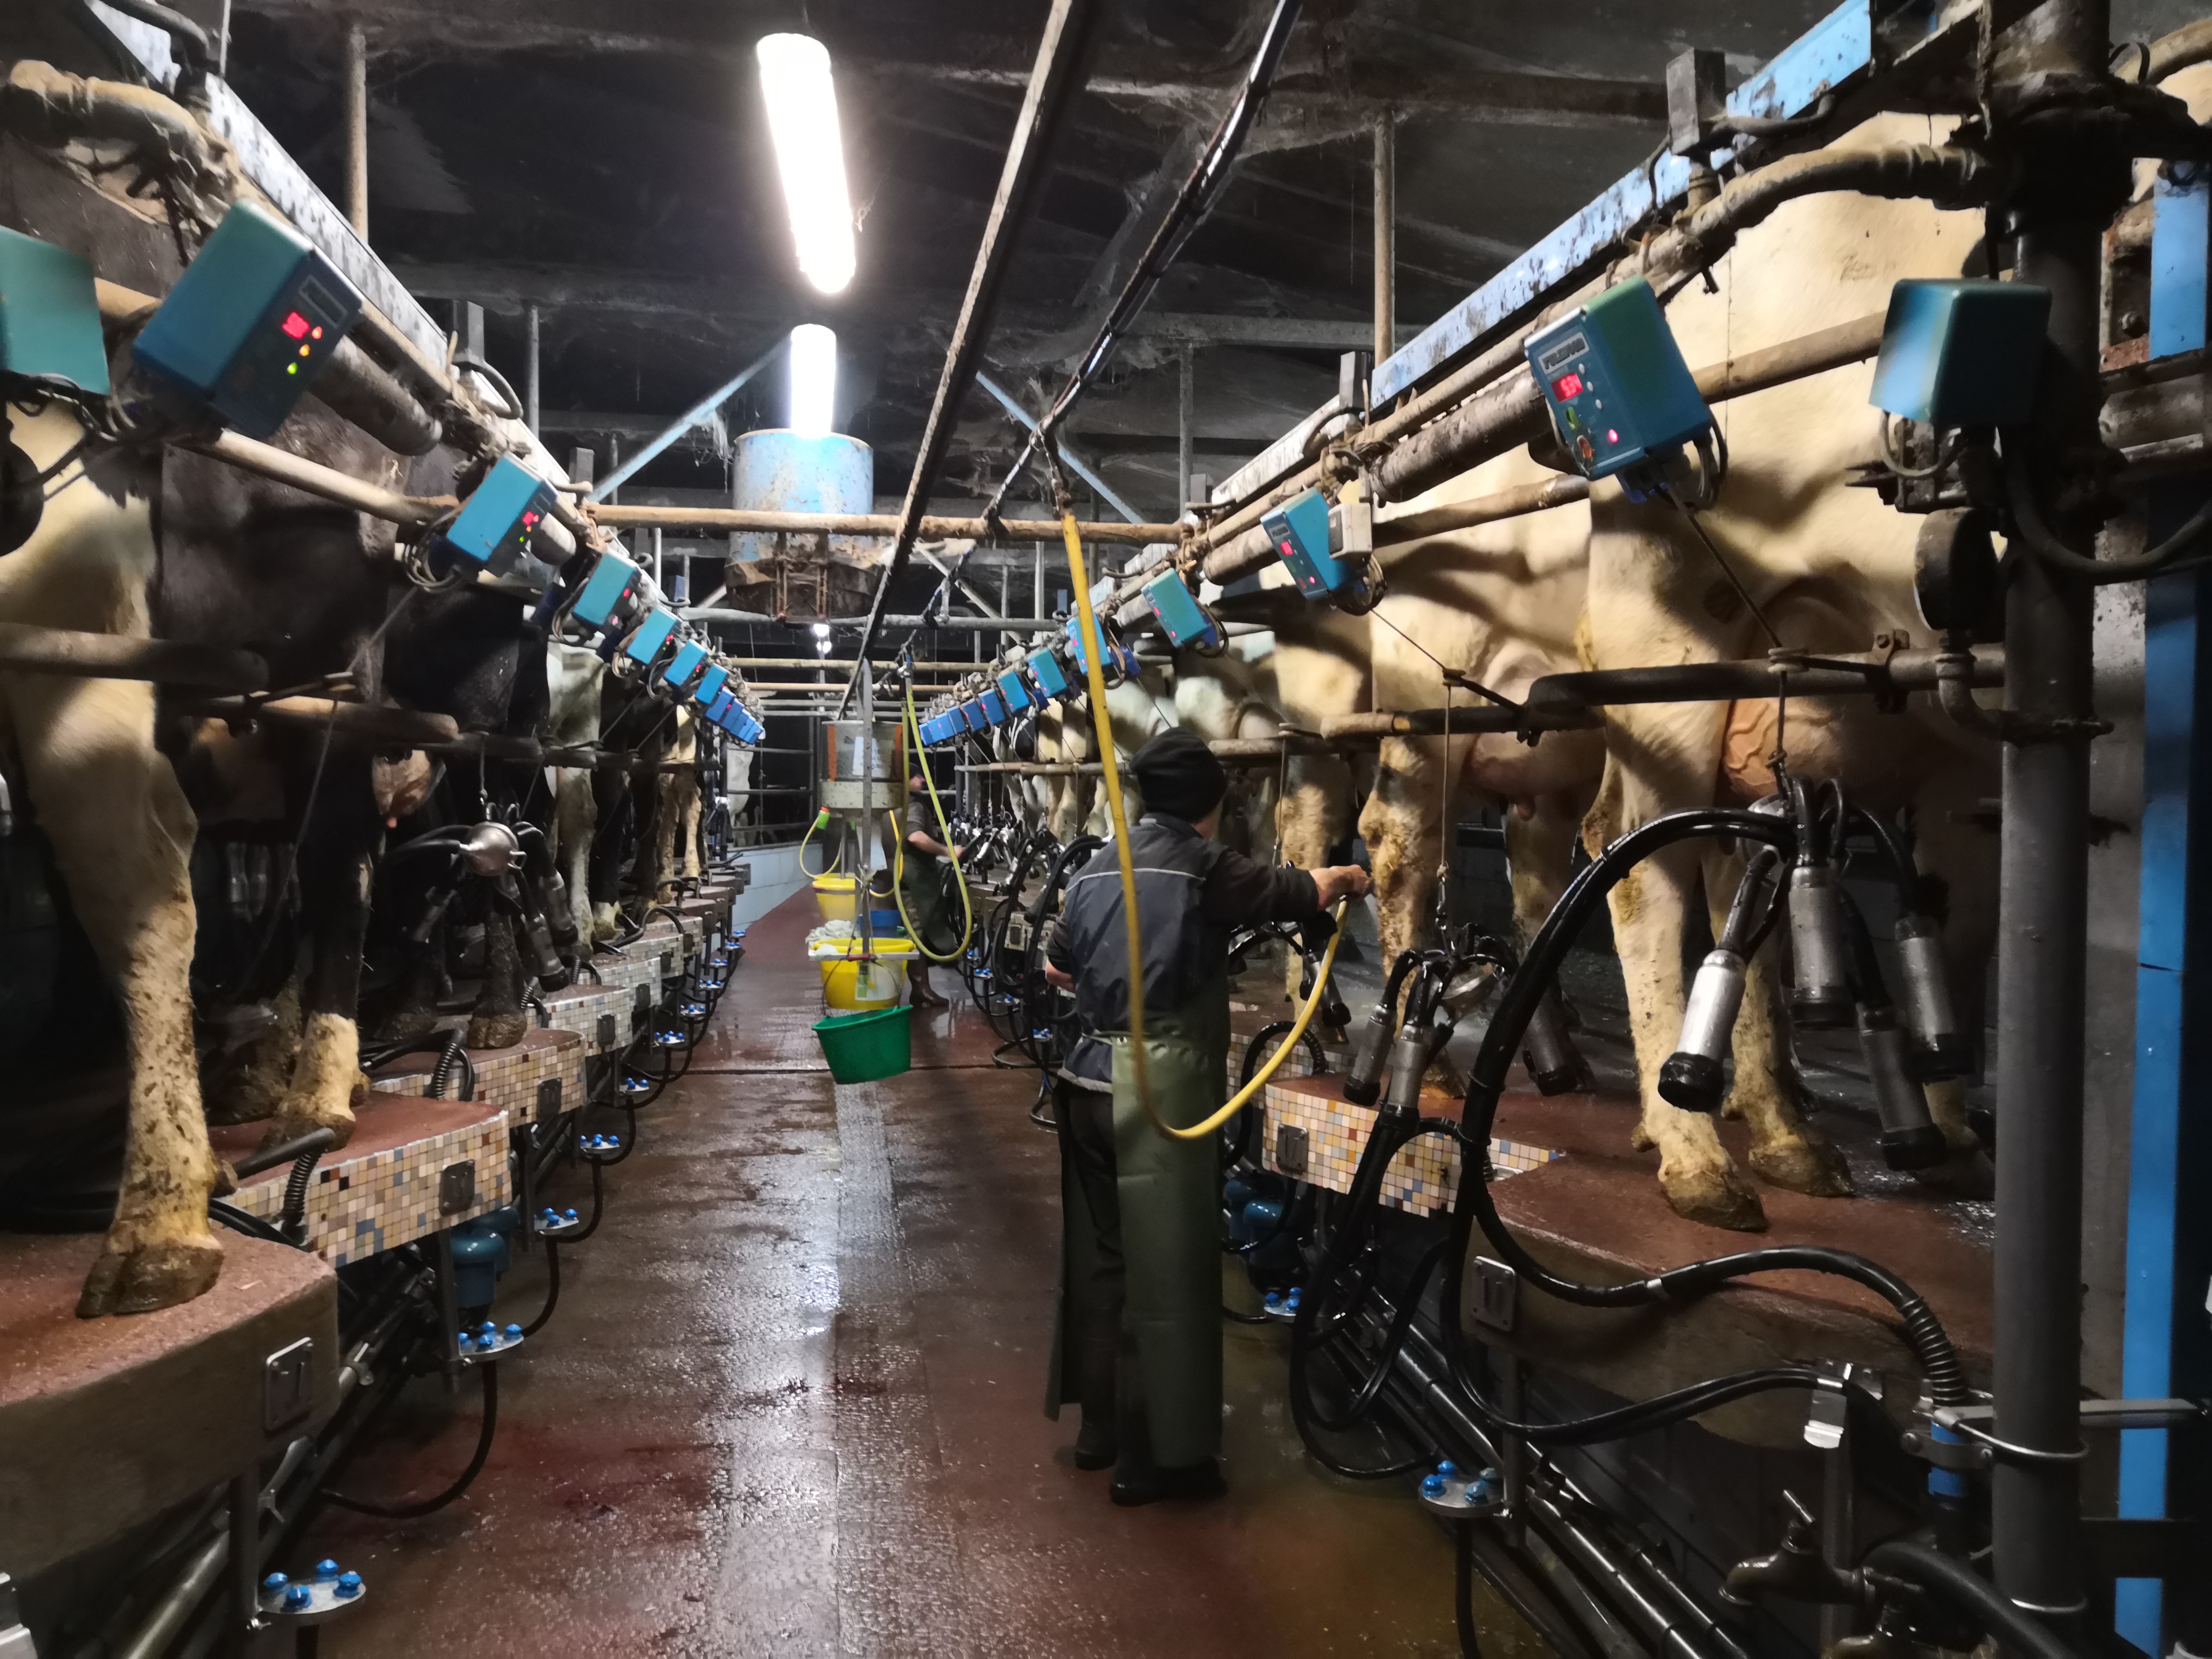 À Servon-sur-Vilaine (Ille-et-Vilaine), 100 vaches laitières passent à la traite chaque jour. © Clara Gabillet